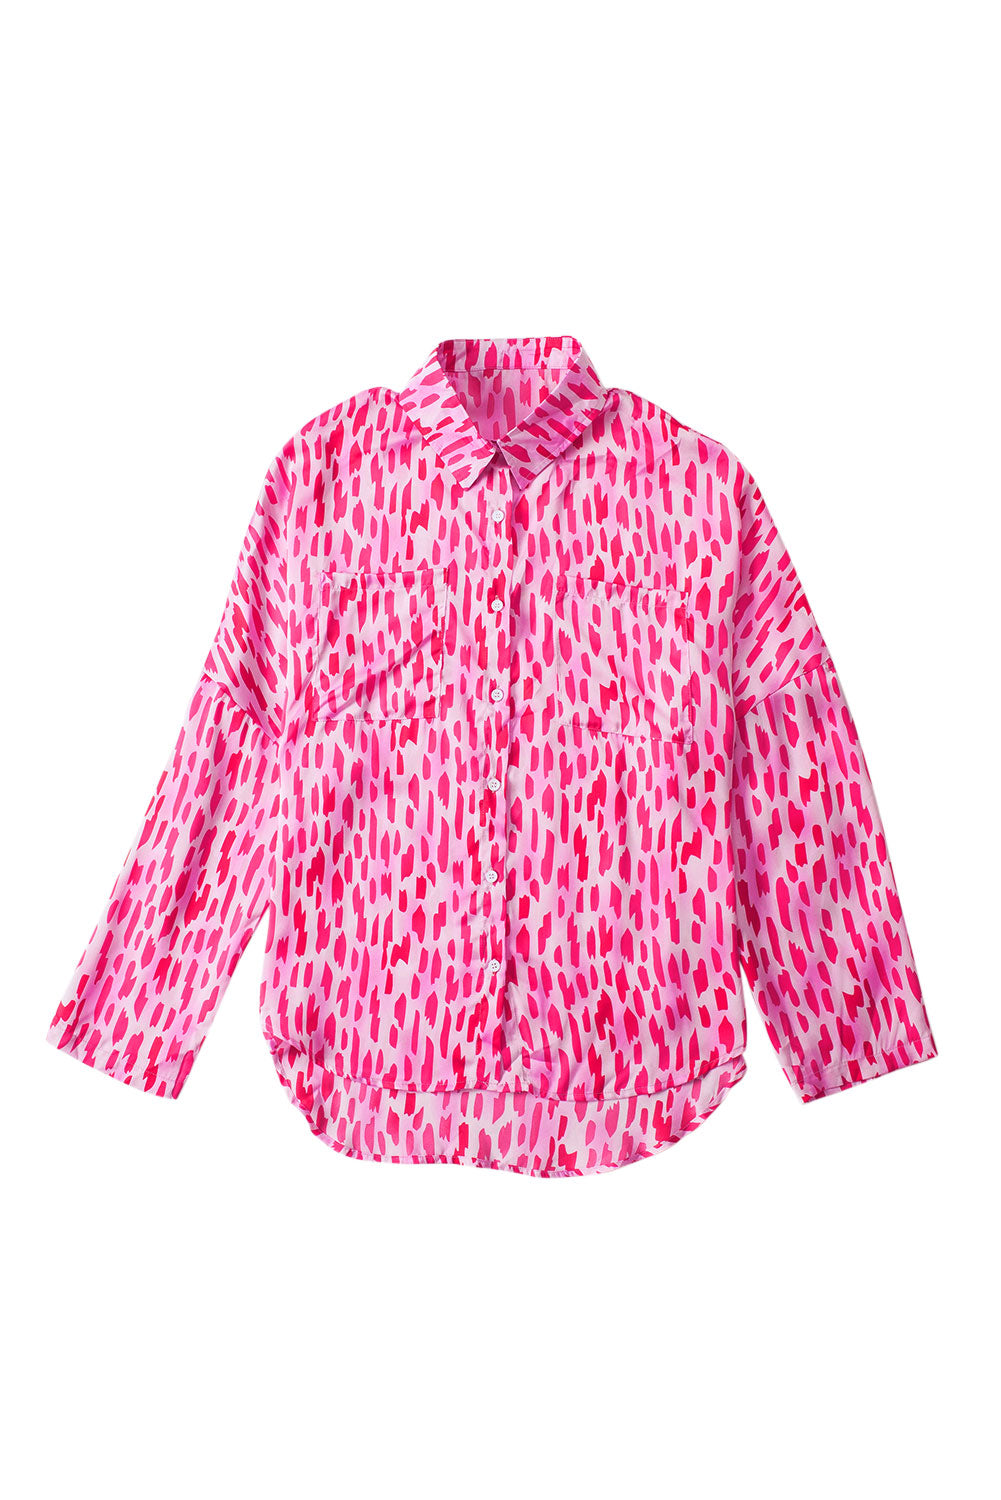 Camicia con bottoni sulla manica con linguetta arrotolata stampata rosa